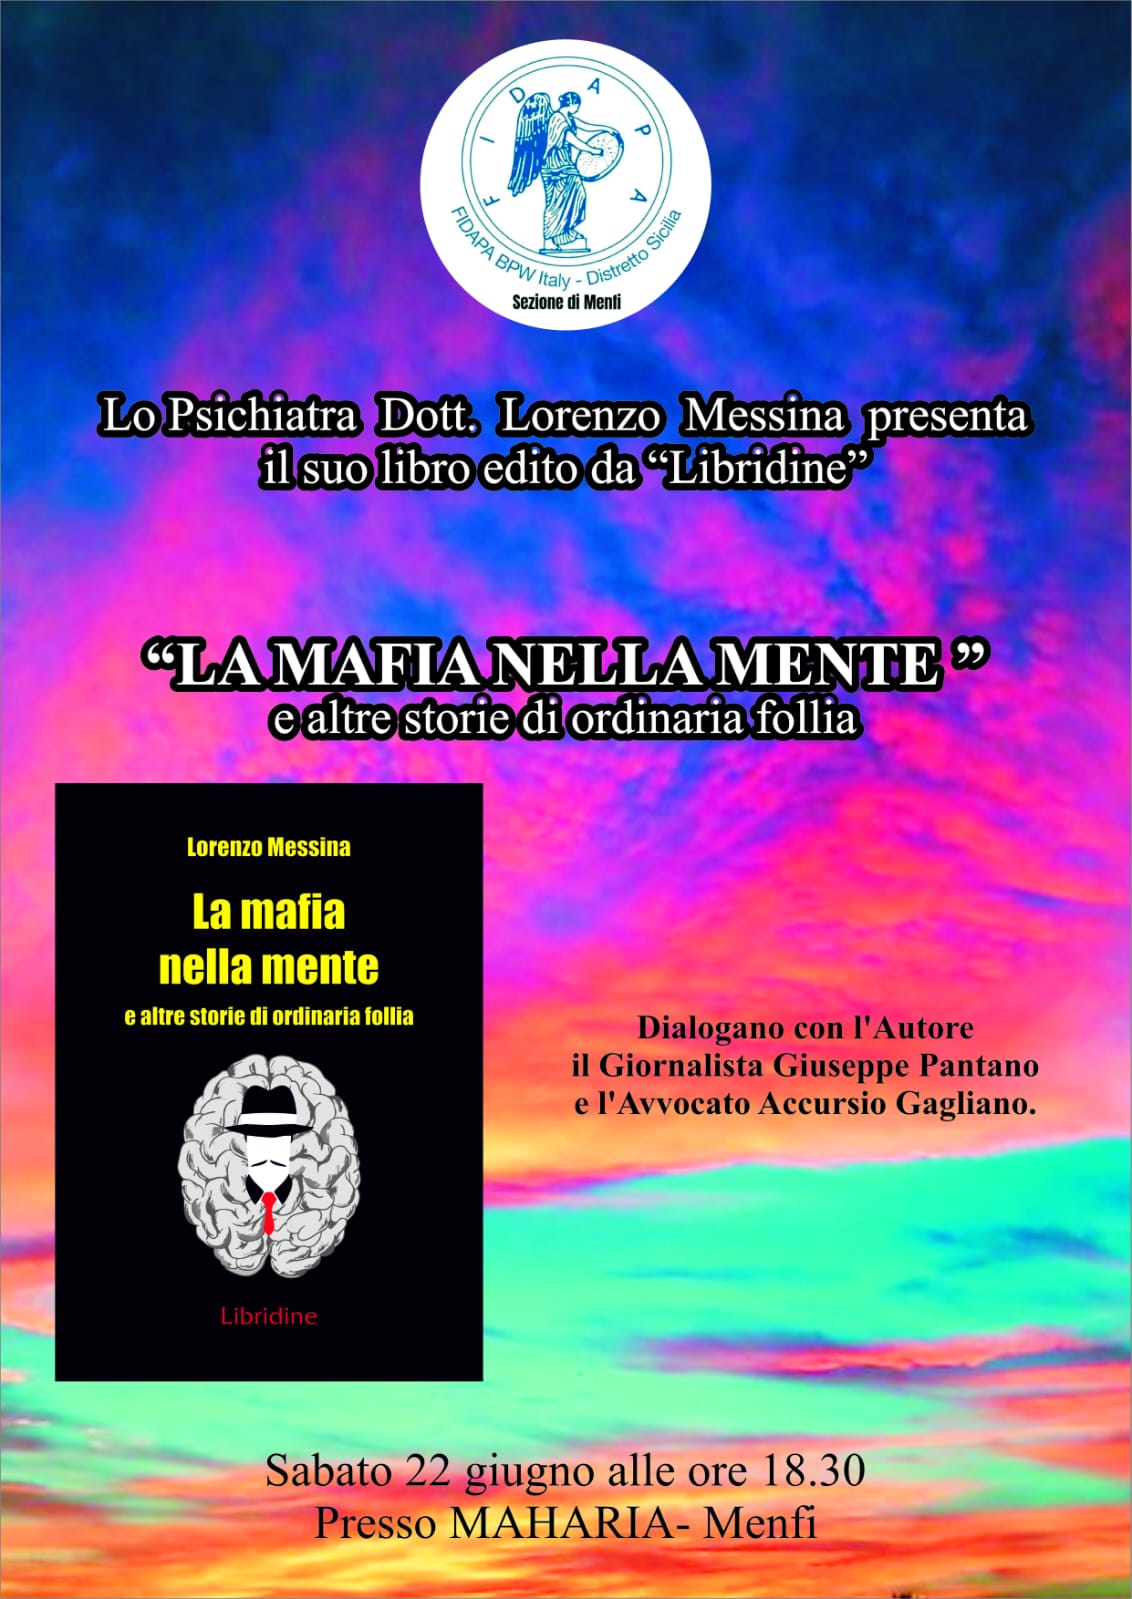 Presentazione del libro di Lorenzo Messina “La mafia nella mente”